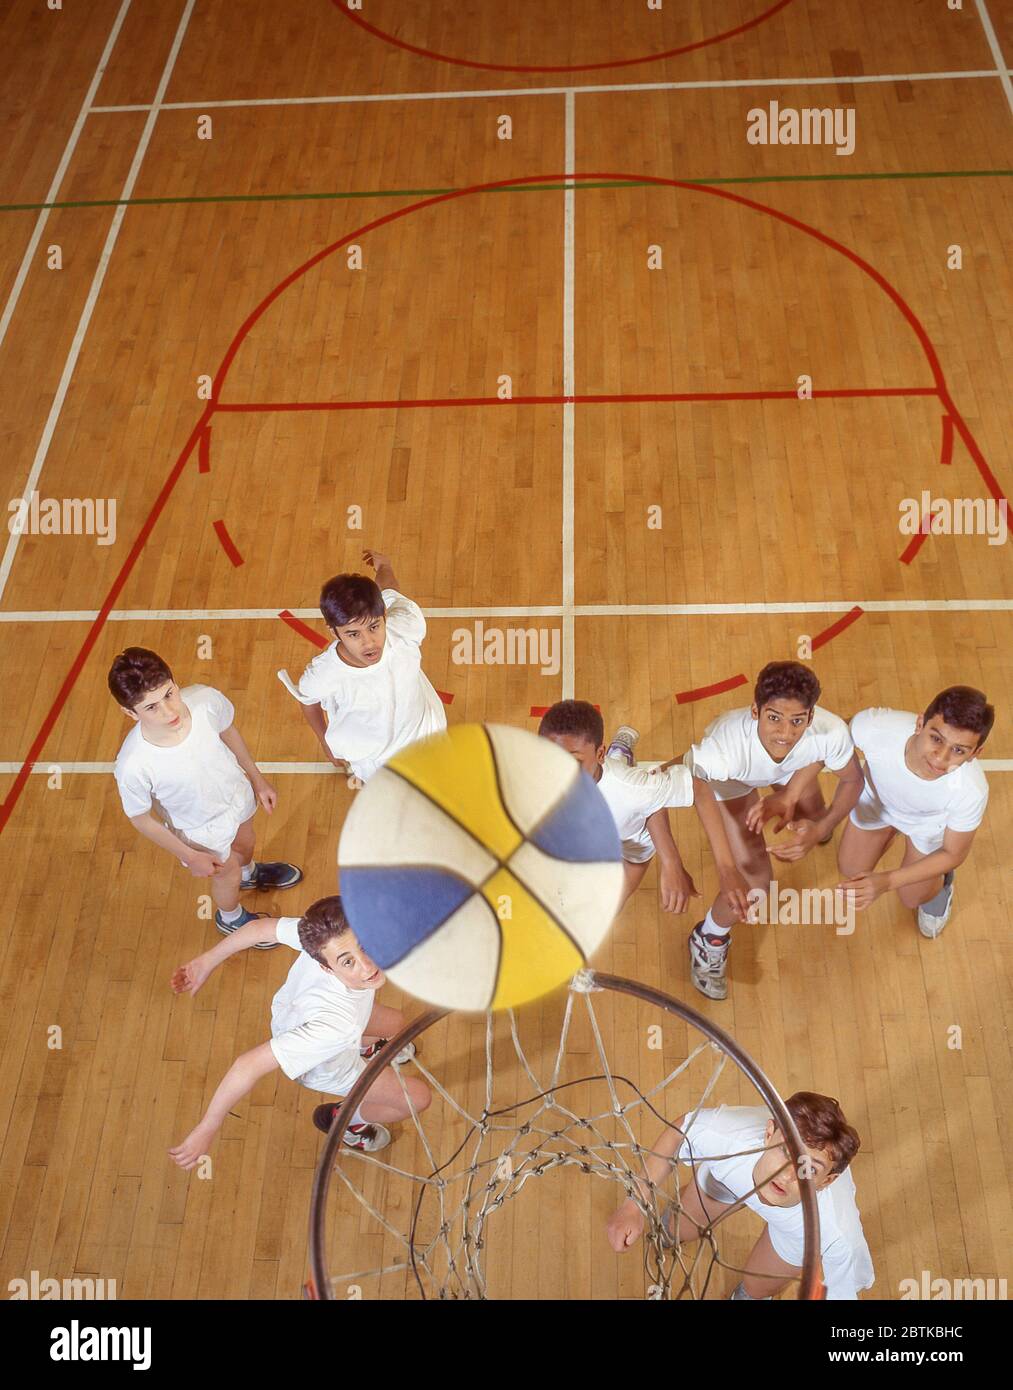 Garçons jouant au basket-ball dans la salle de gym de l'école, Surrey, Angleterre, Royaume-Uni Banque D'Images